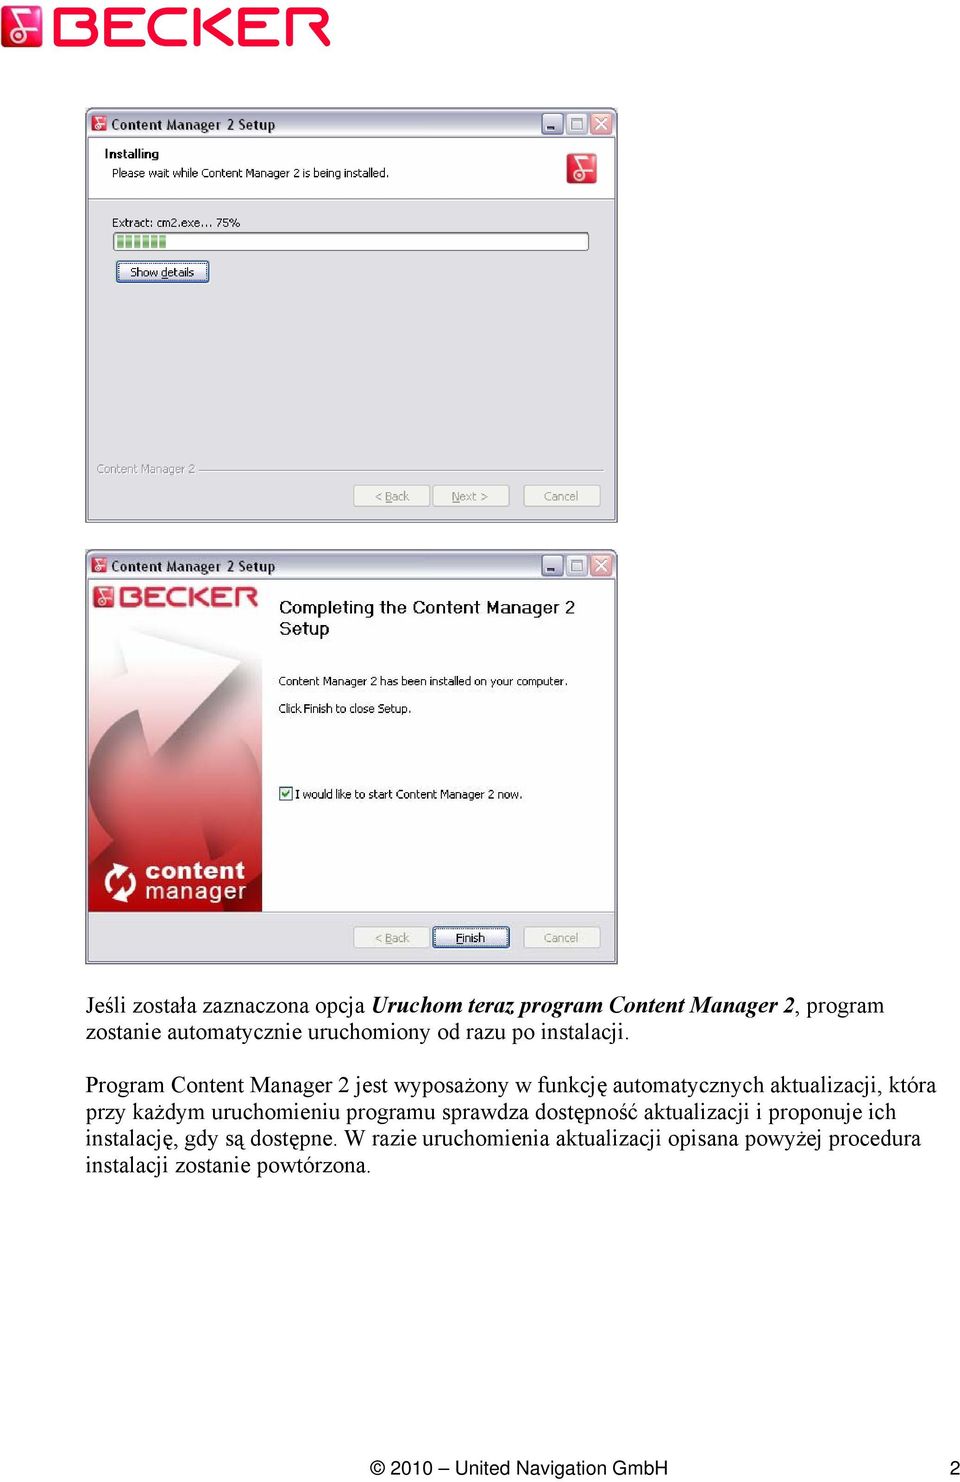 Program Content Manager 2 jest wyposażony w funkcję automatycznych aktualizacji, która przy każdym uruchomieniu